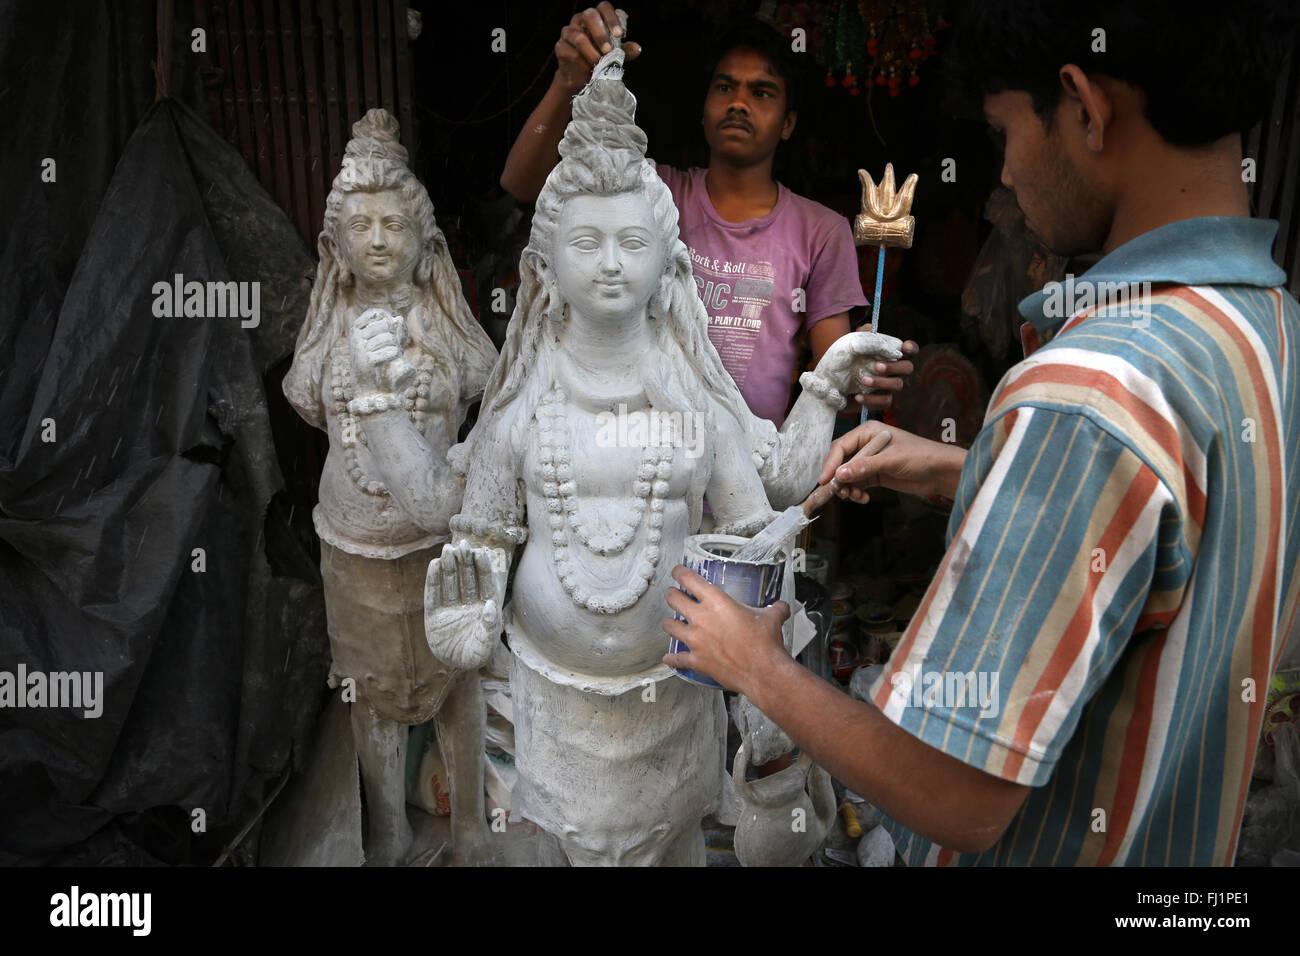 La boue et paille lors hindou Shiva statues faites dans le district de Kumartuli, Kolkata, pour puja et célébrations hindoues Banque D'Images